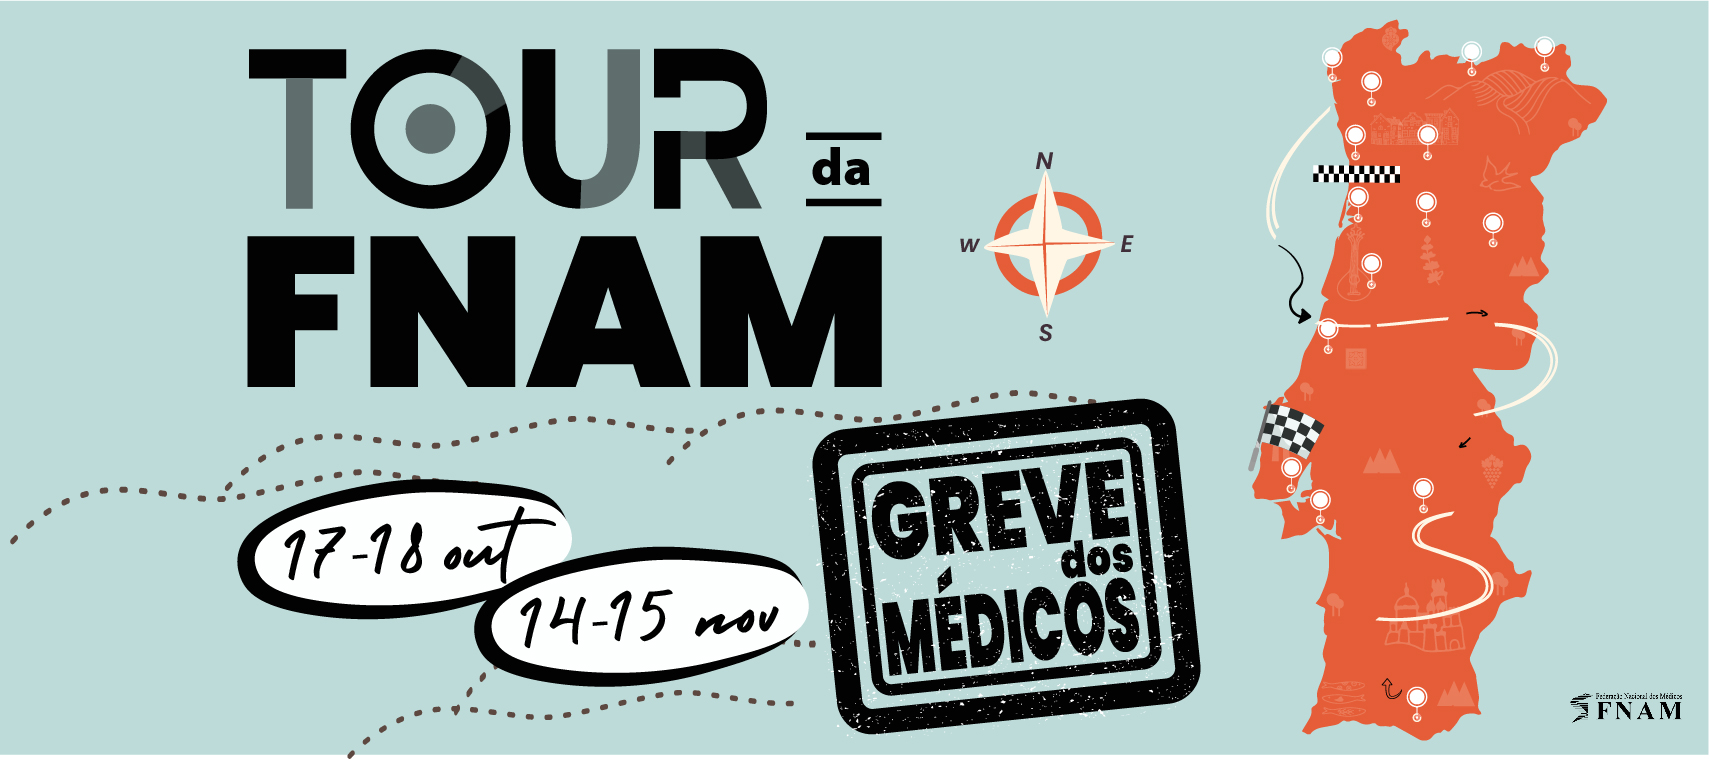 Tour FNAM - Caravana pelo país 